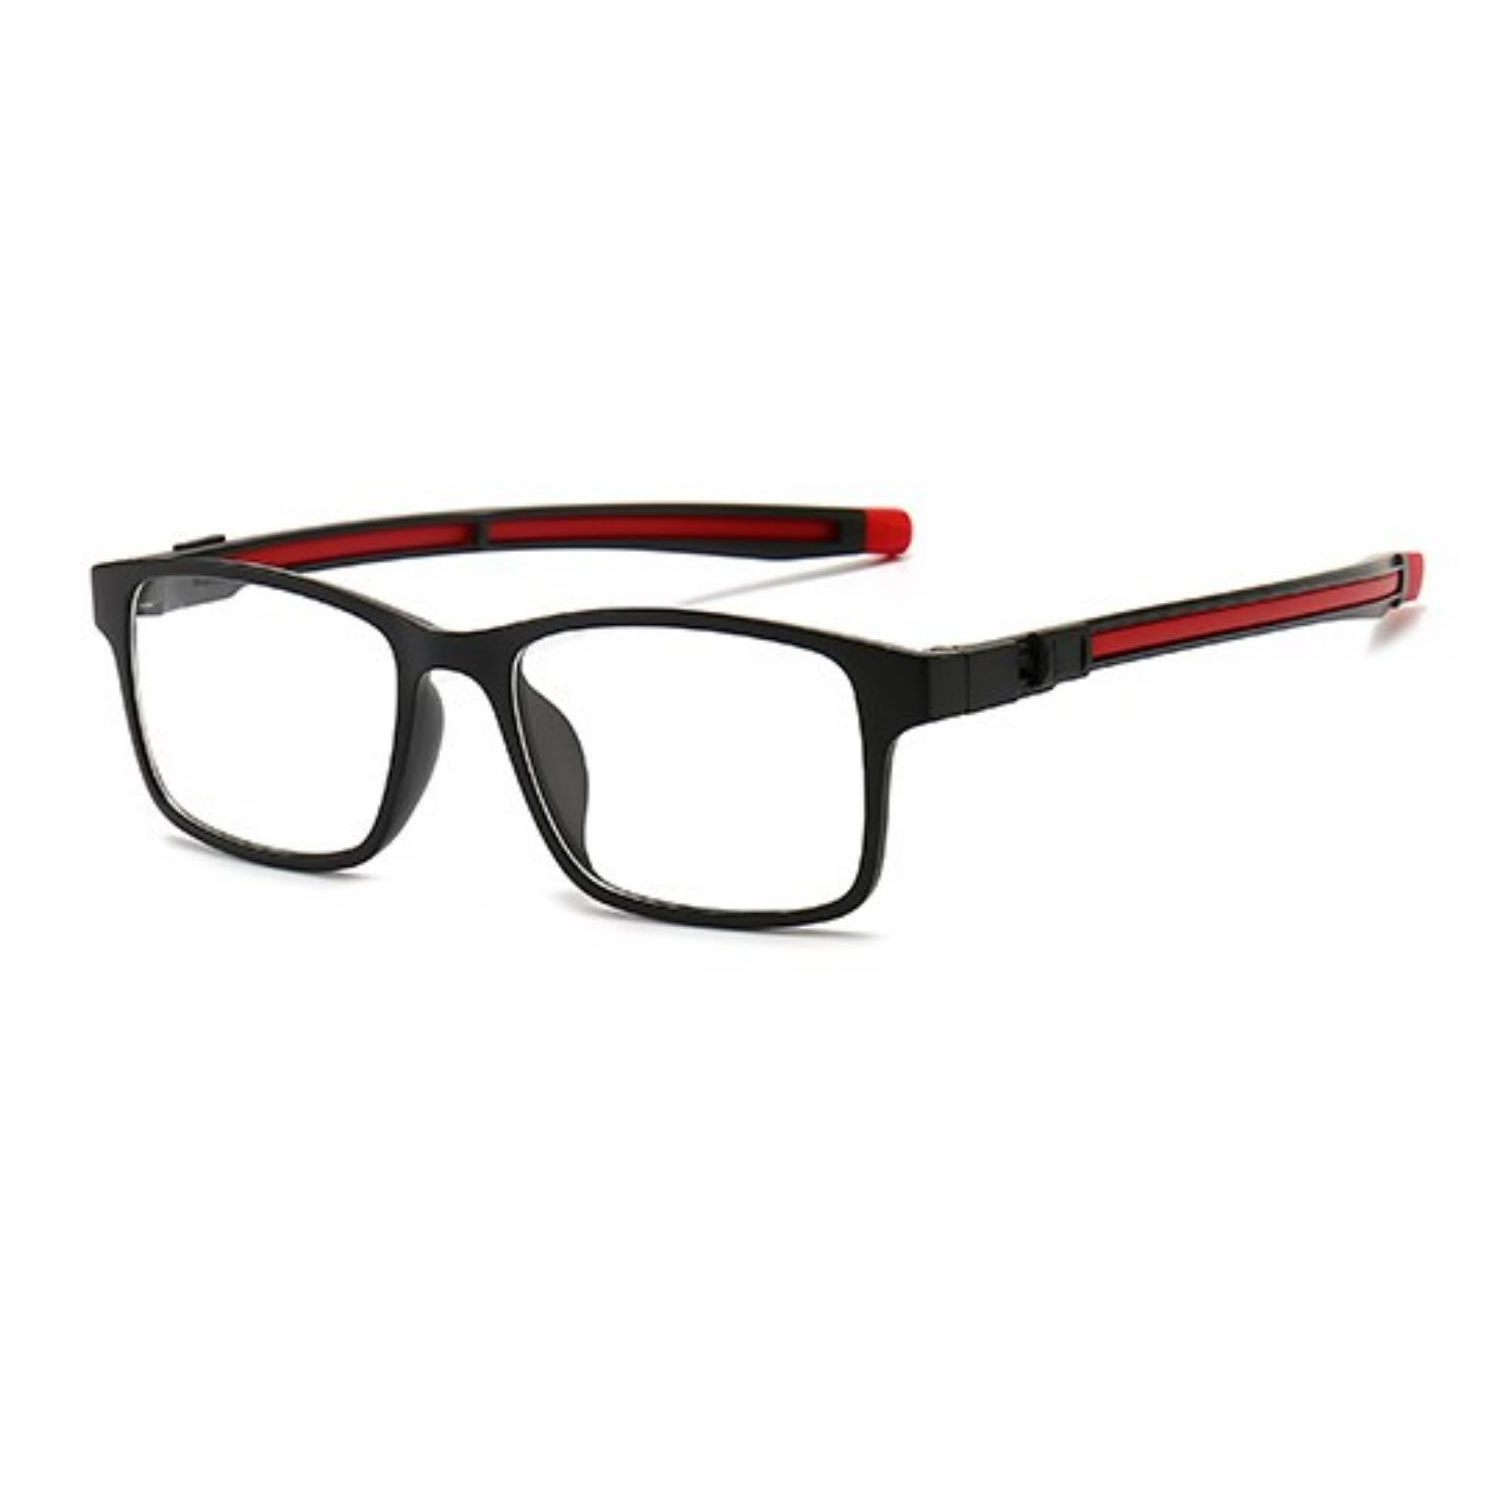 clip-on glasses frame